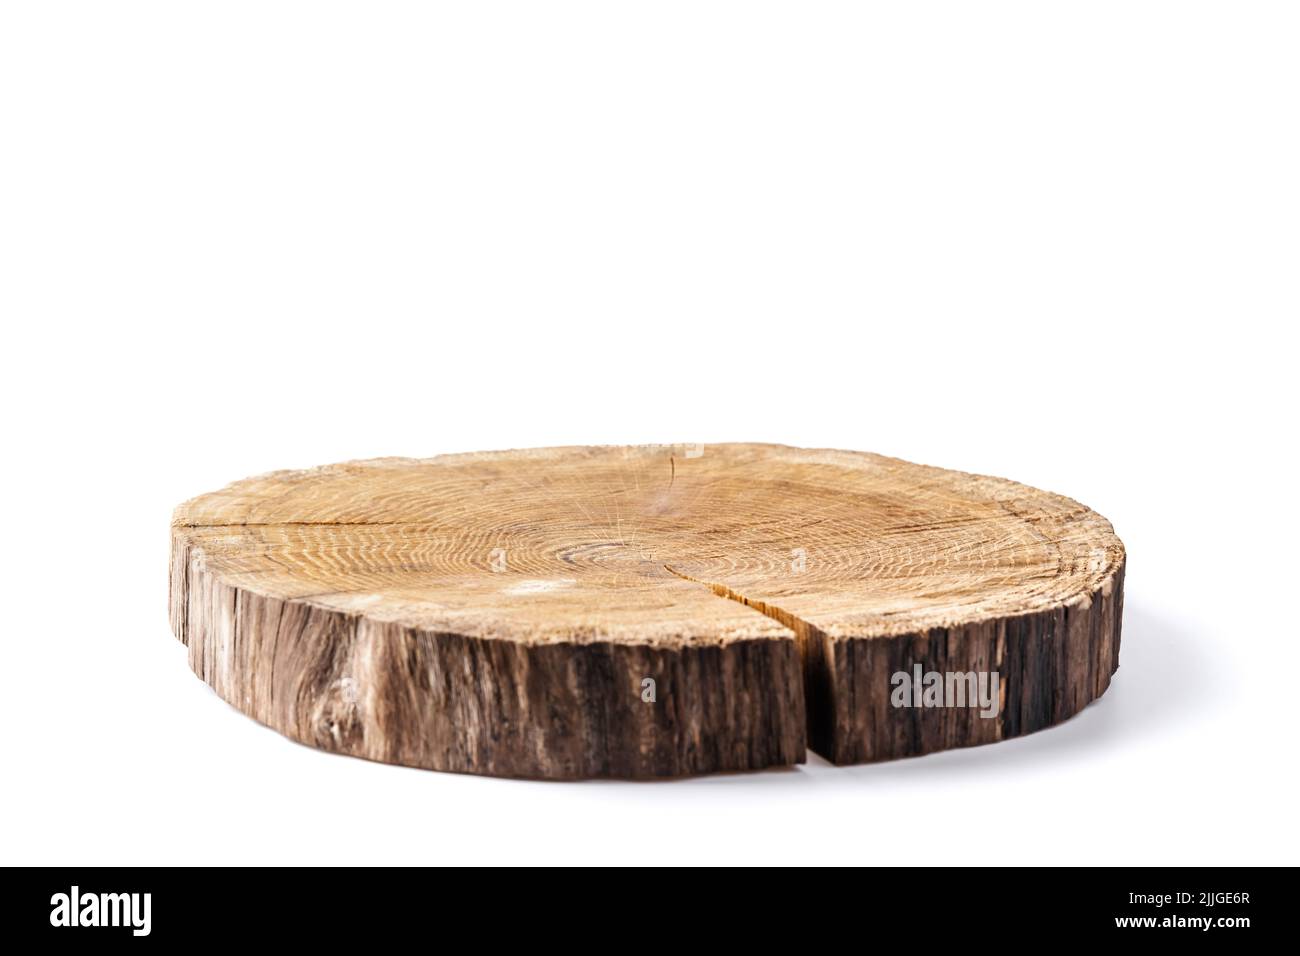 Assiette en bois sculptée dans le tronc d'arbre isolée sur fond blanc. Peut être utilisé comme support pour votre objet Banque D'Images